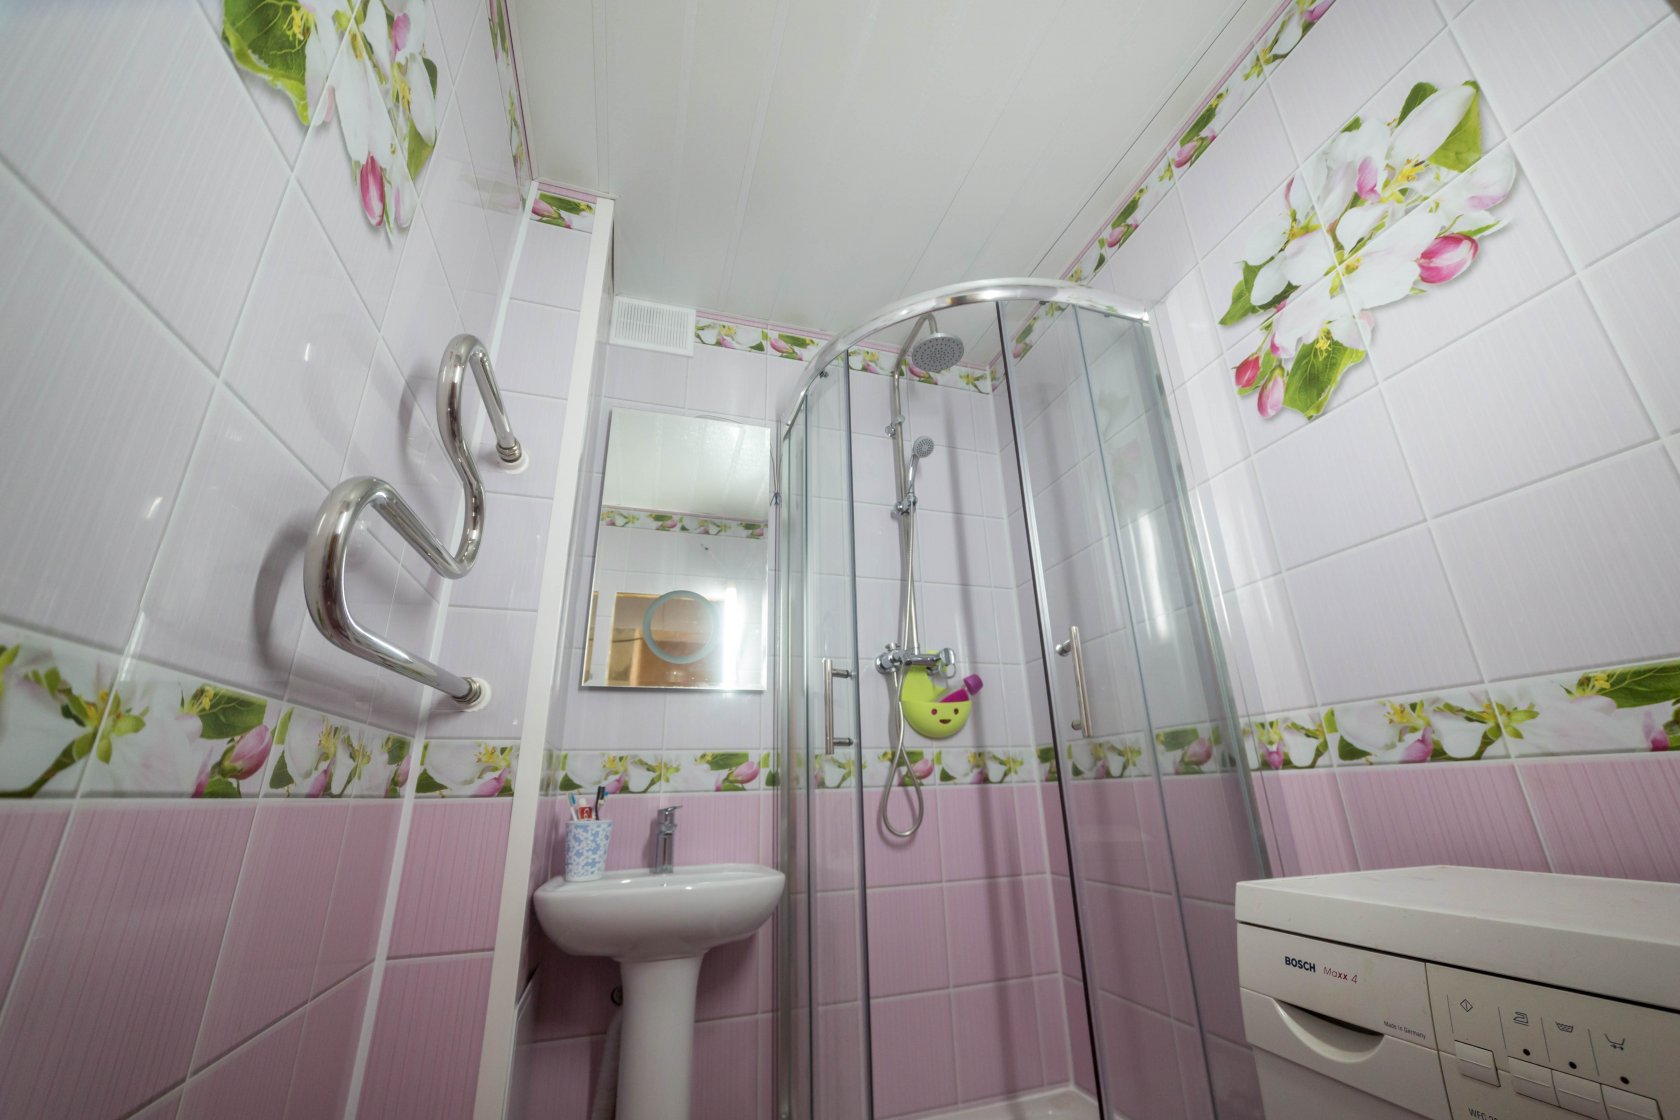 Фото ванной комнаты с панелями пвх фото